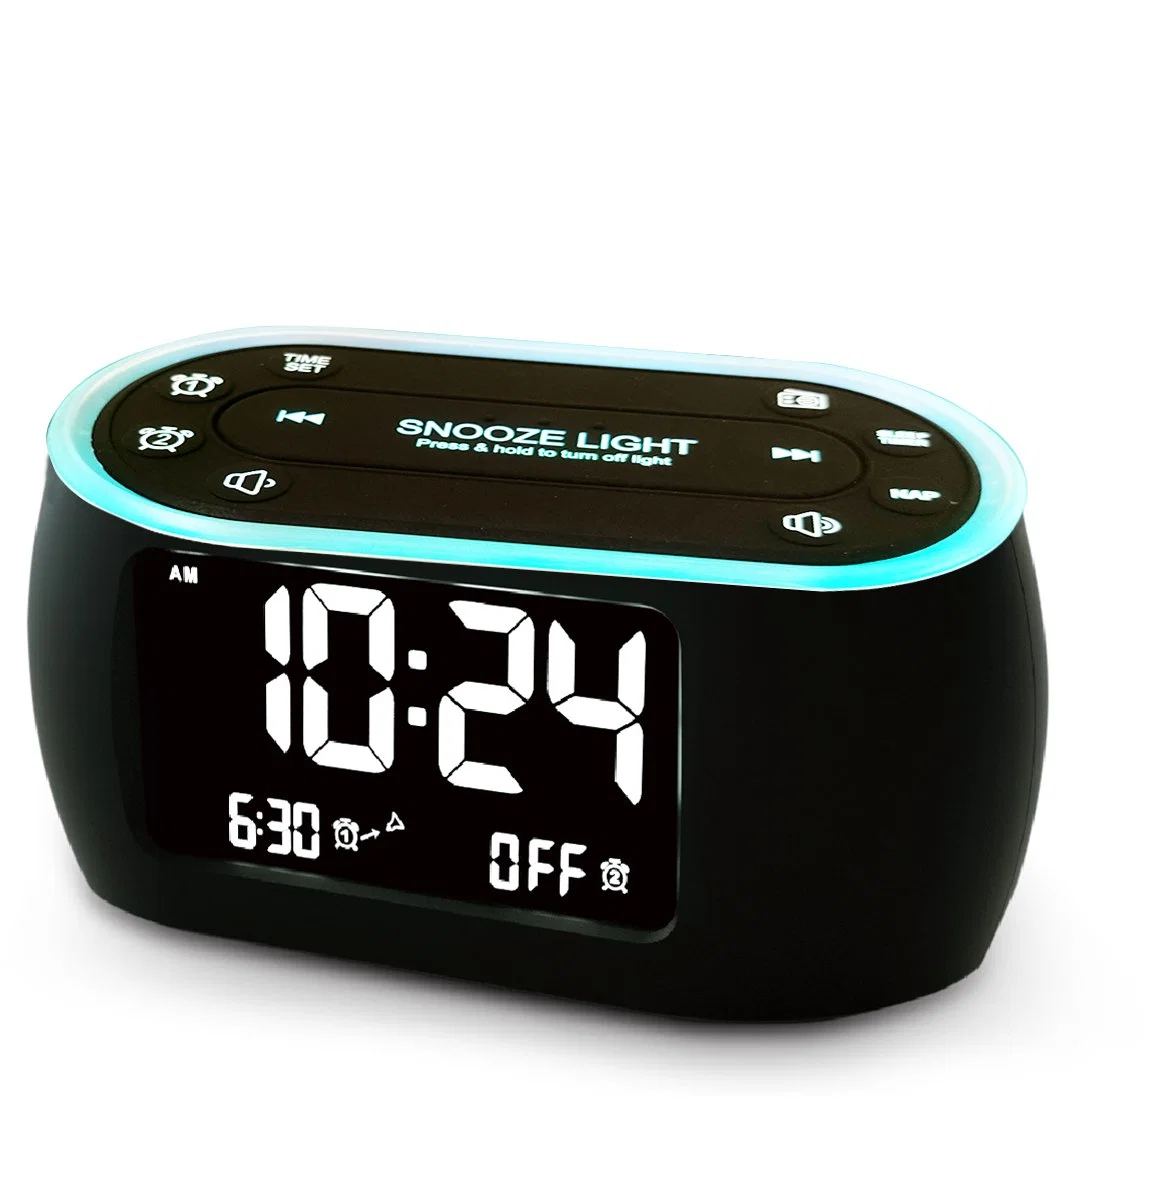 Radio FM PLL digital compatible con USB Cargando luces nocturnas de reloj alarma dual